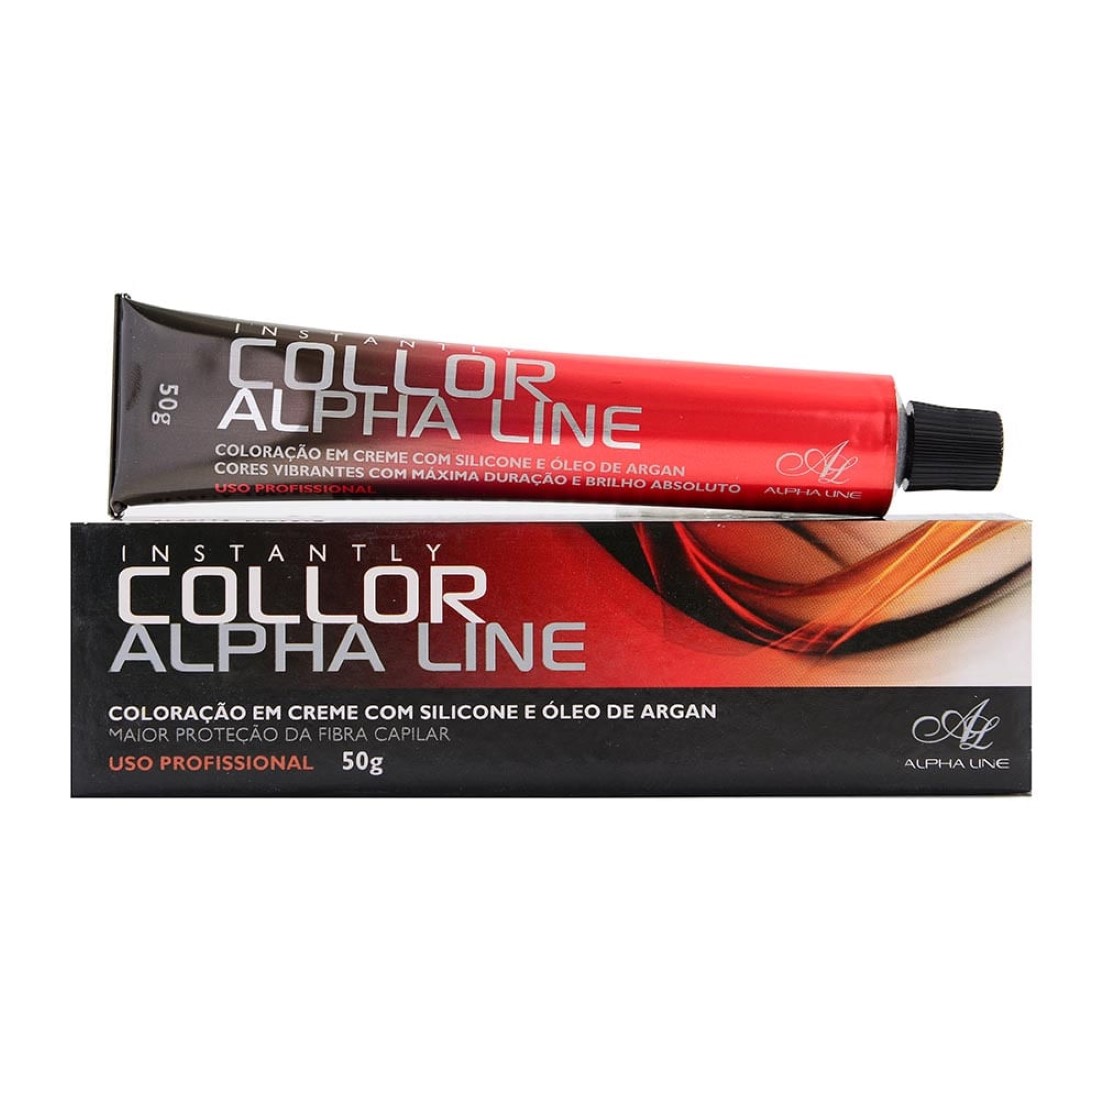 Coloração Instantly Collor Castanho Claro 5.0 - Alpha Line